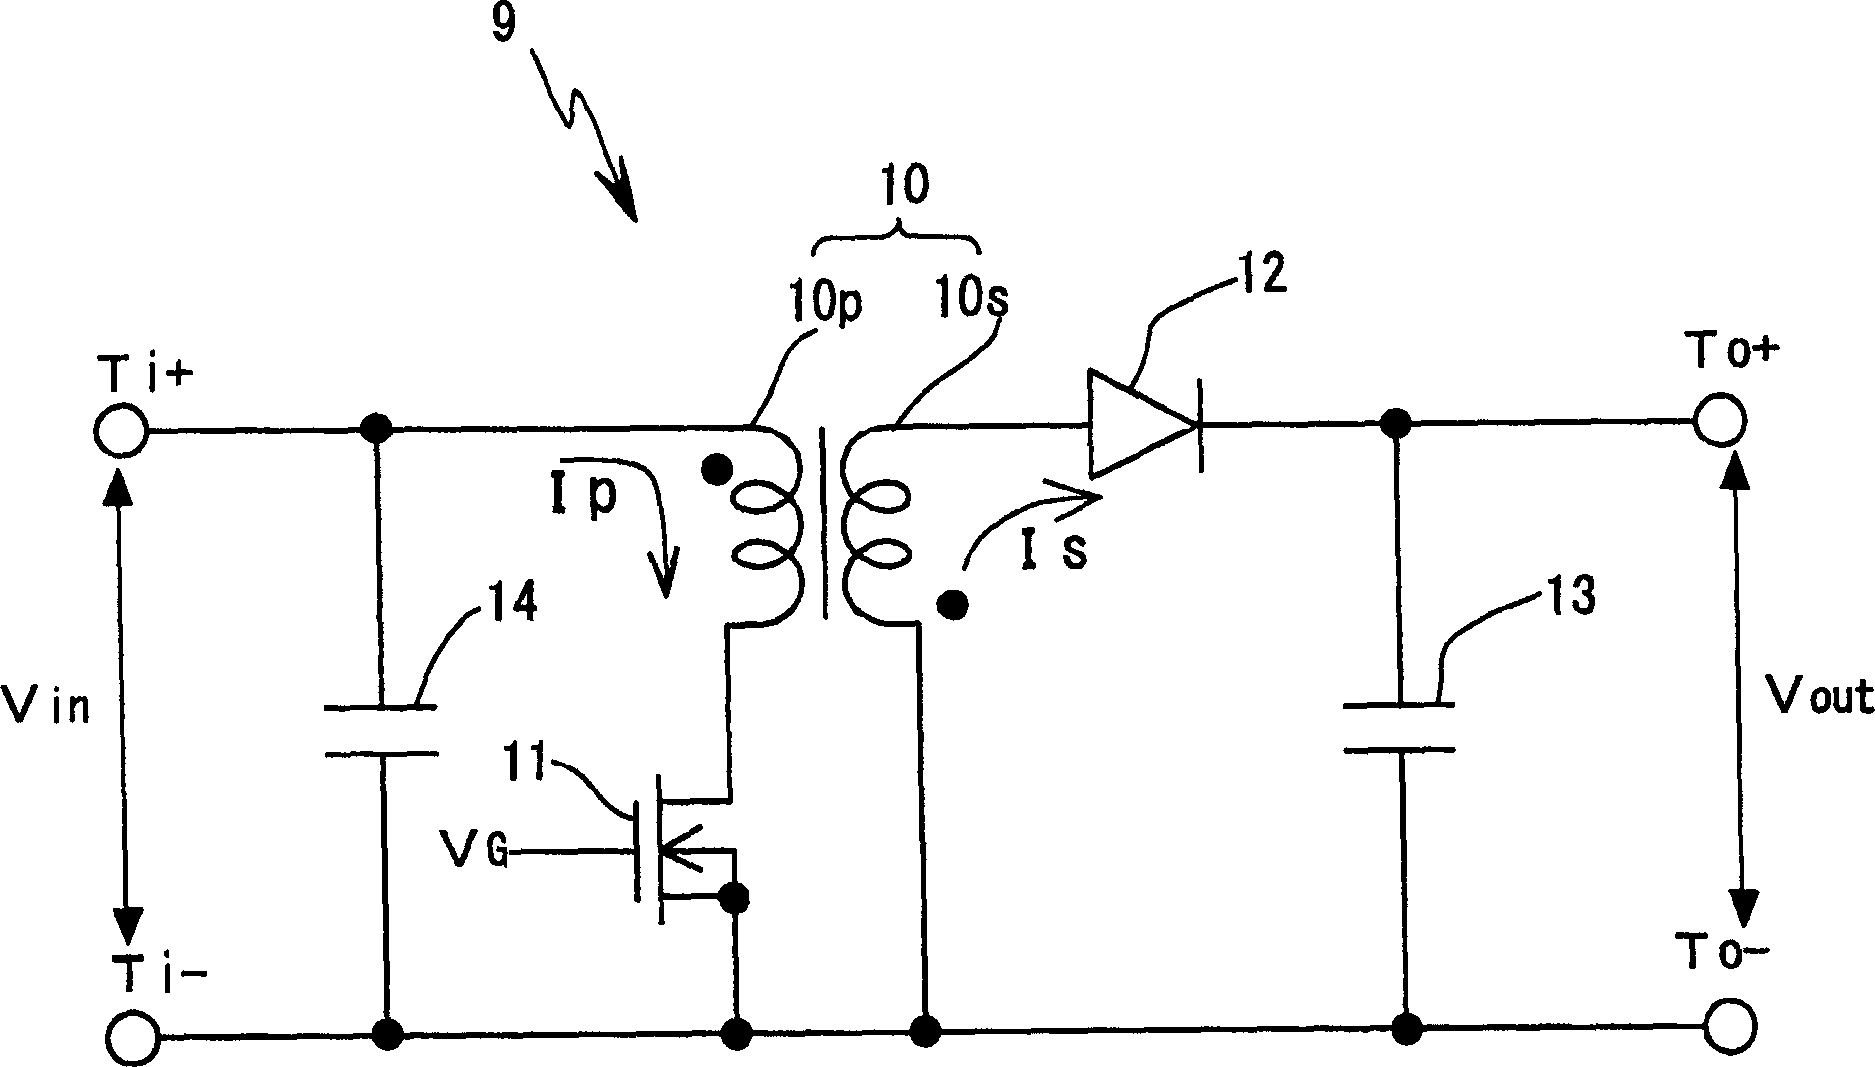 D.C. Voltage conversion electric appliance